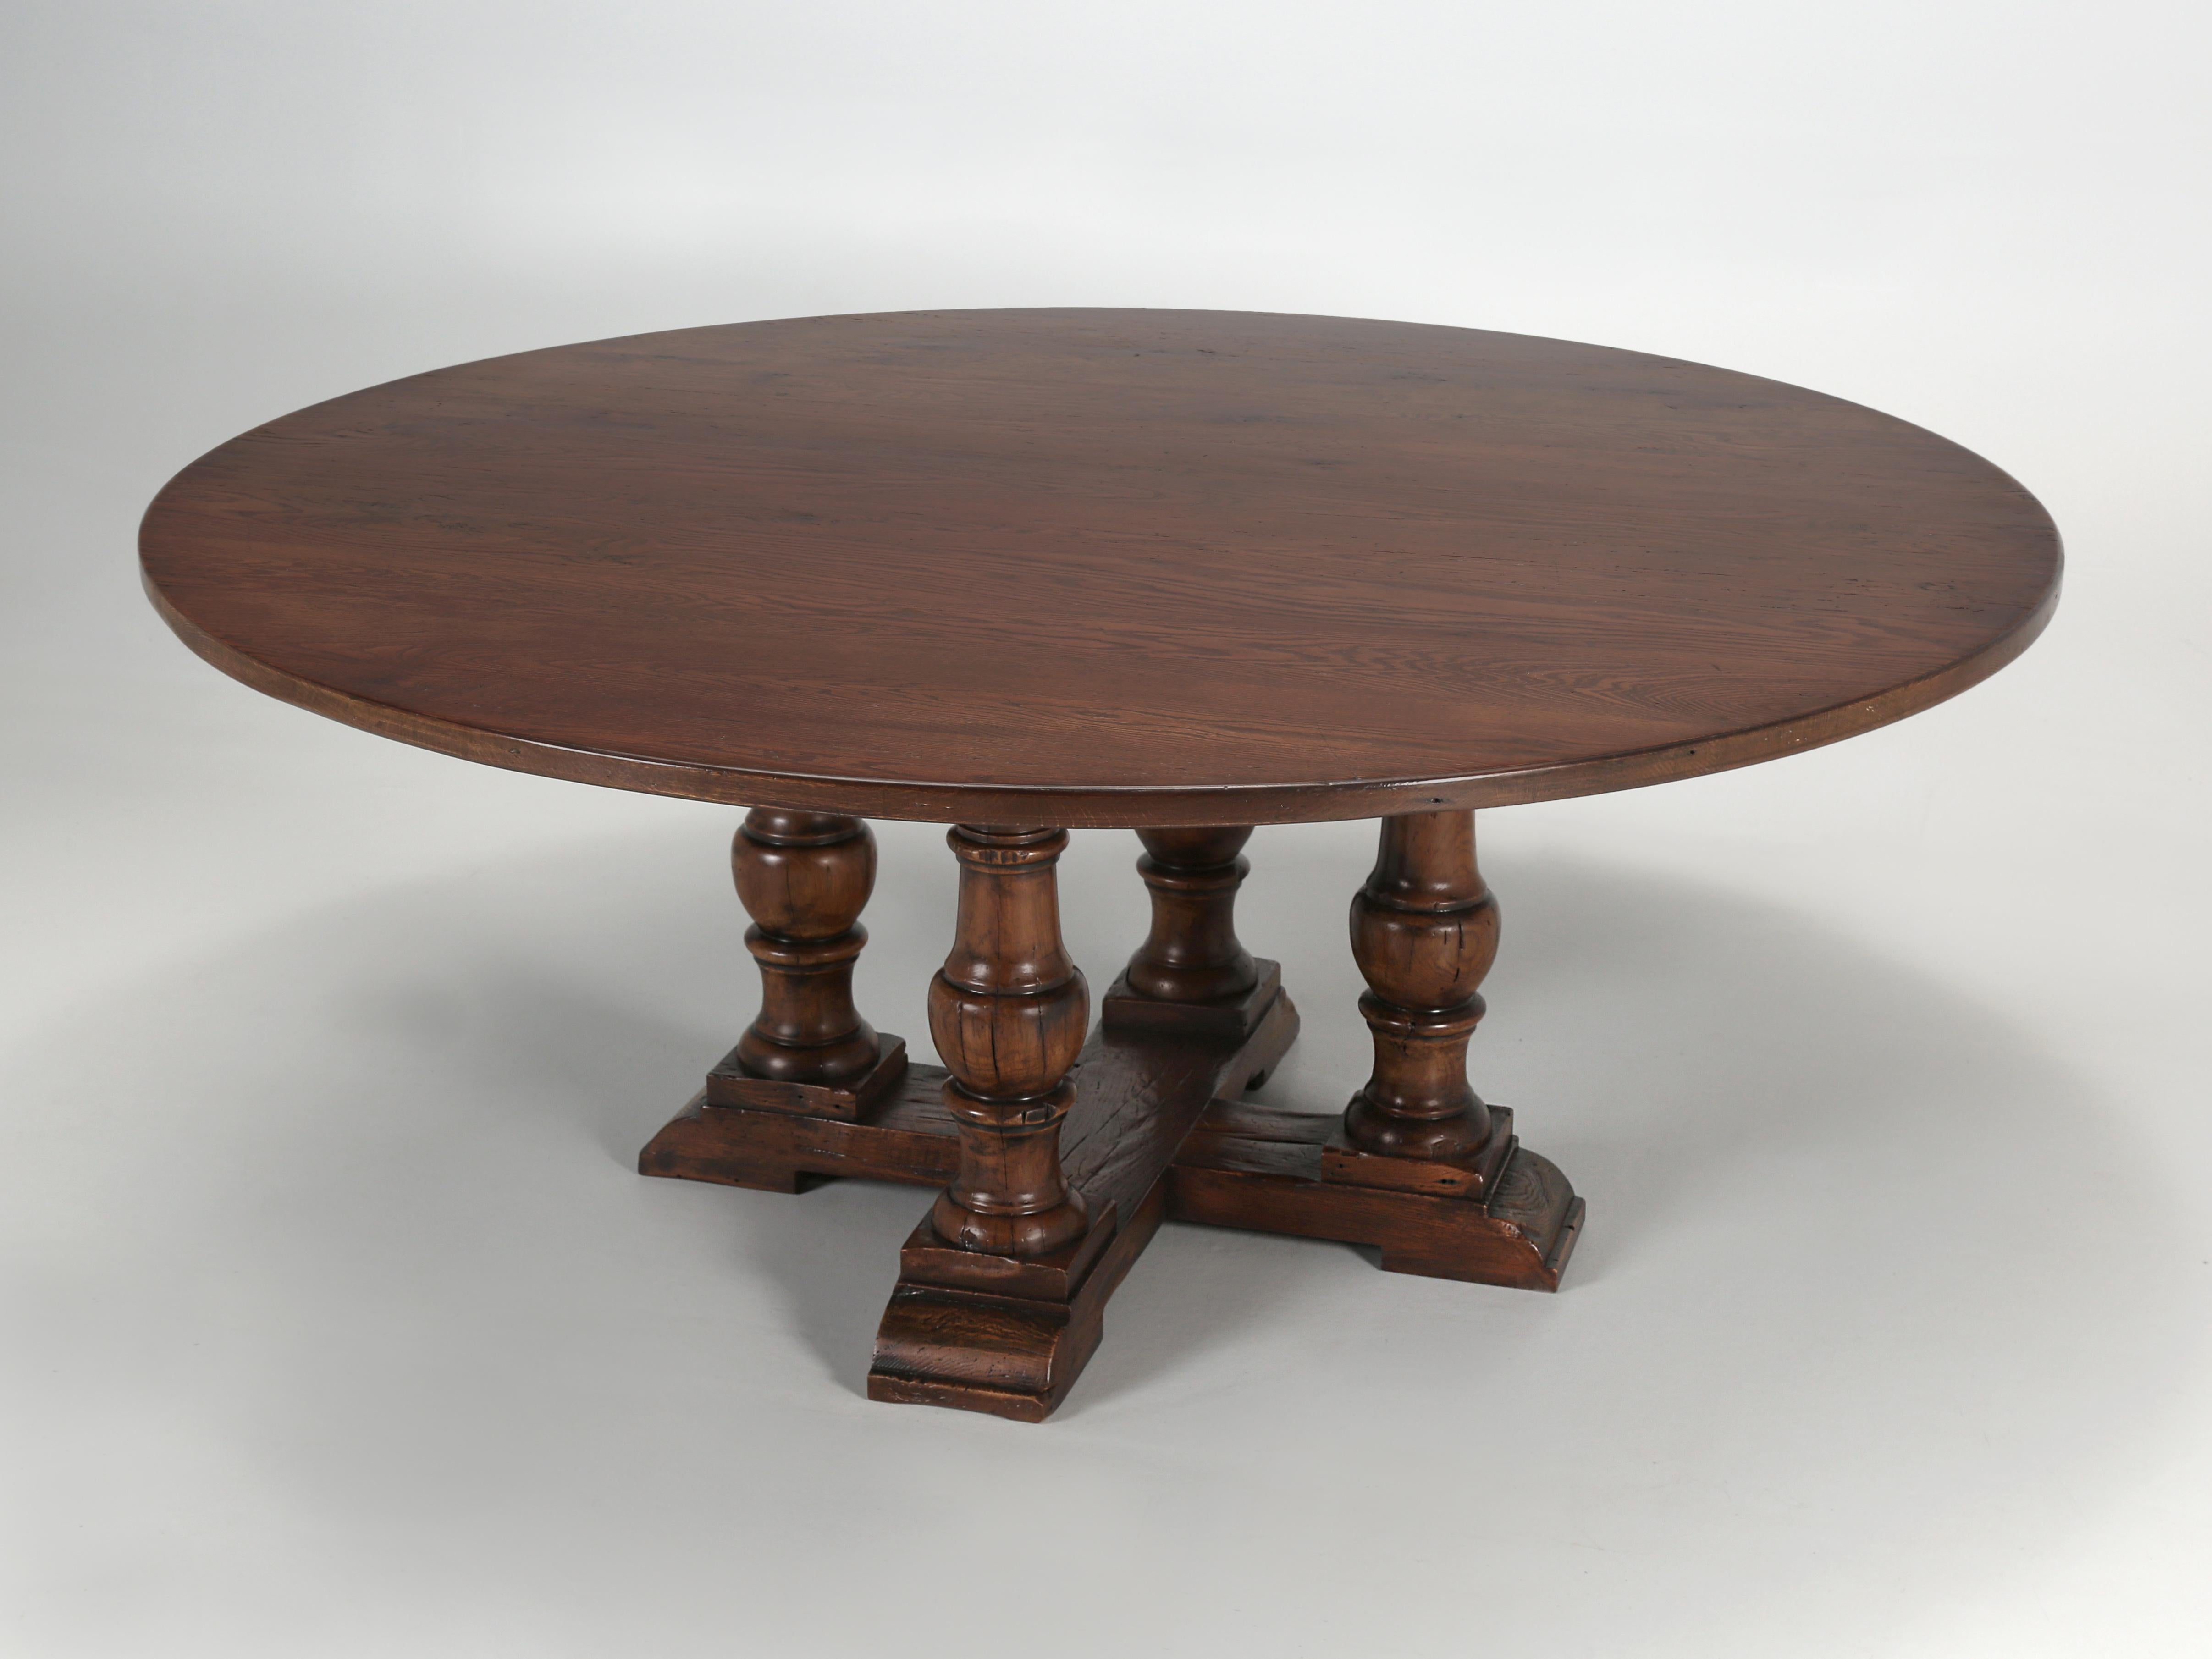 Une autre table de salle à manger ou de cuisine qui fait partie de la collection Old Plank de meubles sur mesure. Depuis plus de 30 ans, Old Plank fabrique discrètement des meubles sur mesure pour les designers d'intérieur du monde entier. Notre